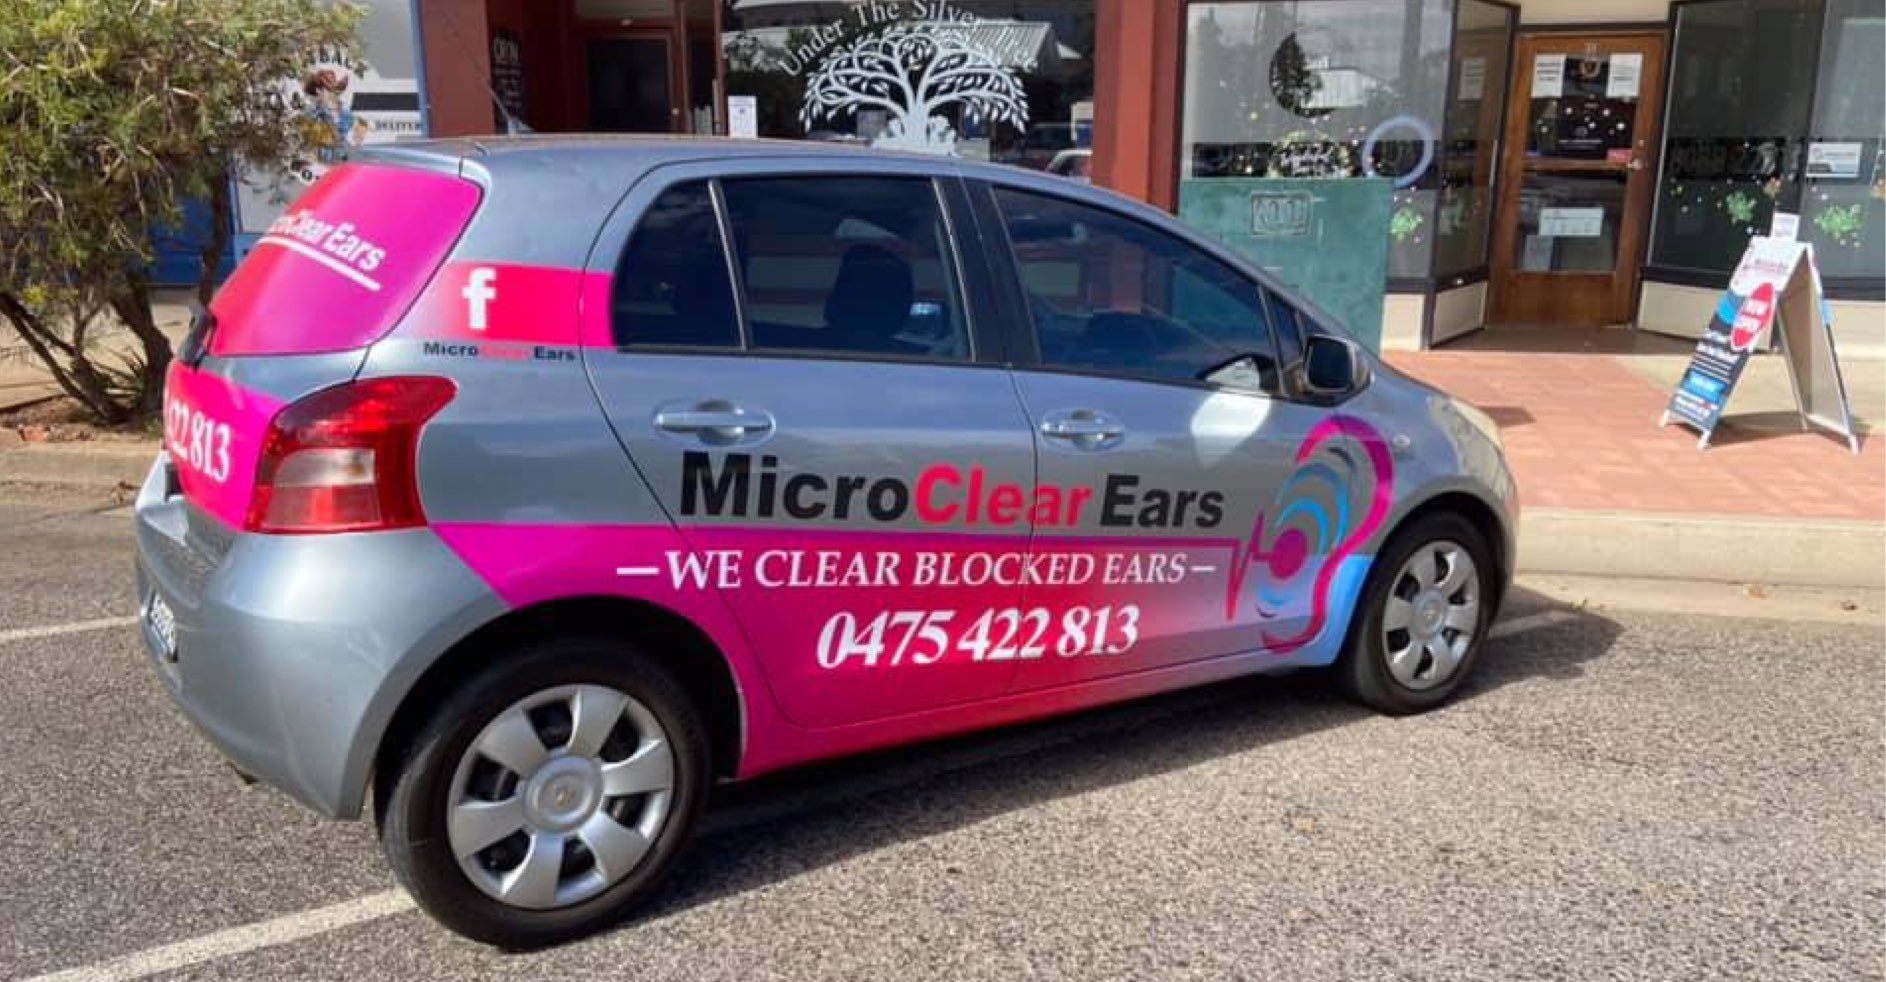 The MicroClear Ears Car